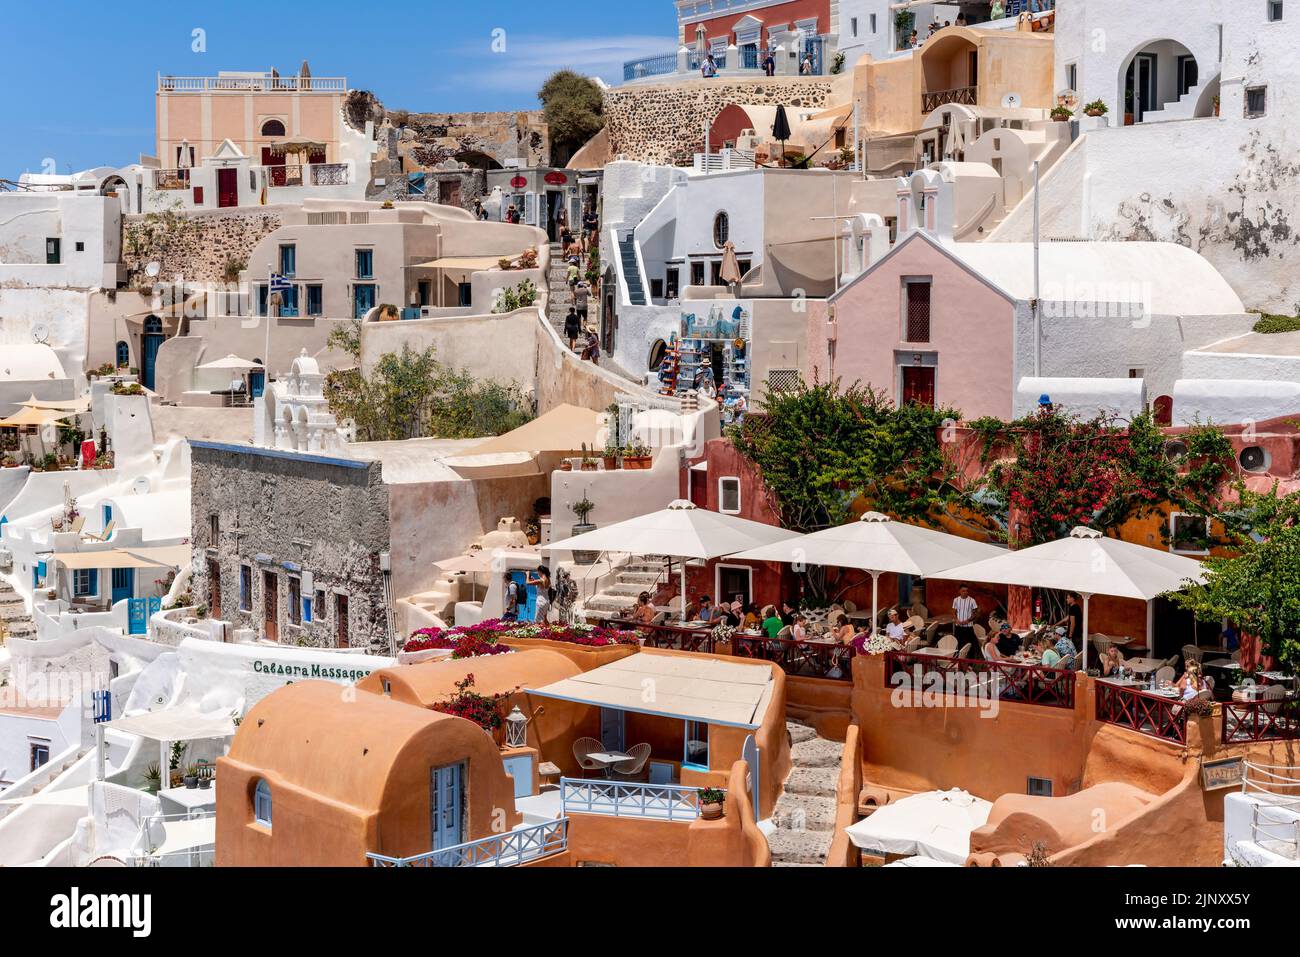 Personnes manger dans Un restaurant donnant sur la mer Égée dans la ville d'Oia, Santorin, les îles grecques, Grèce. Banque D'Images